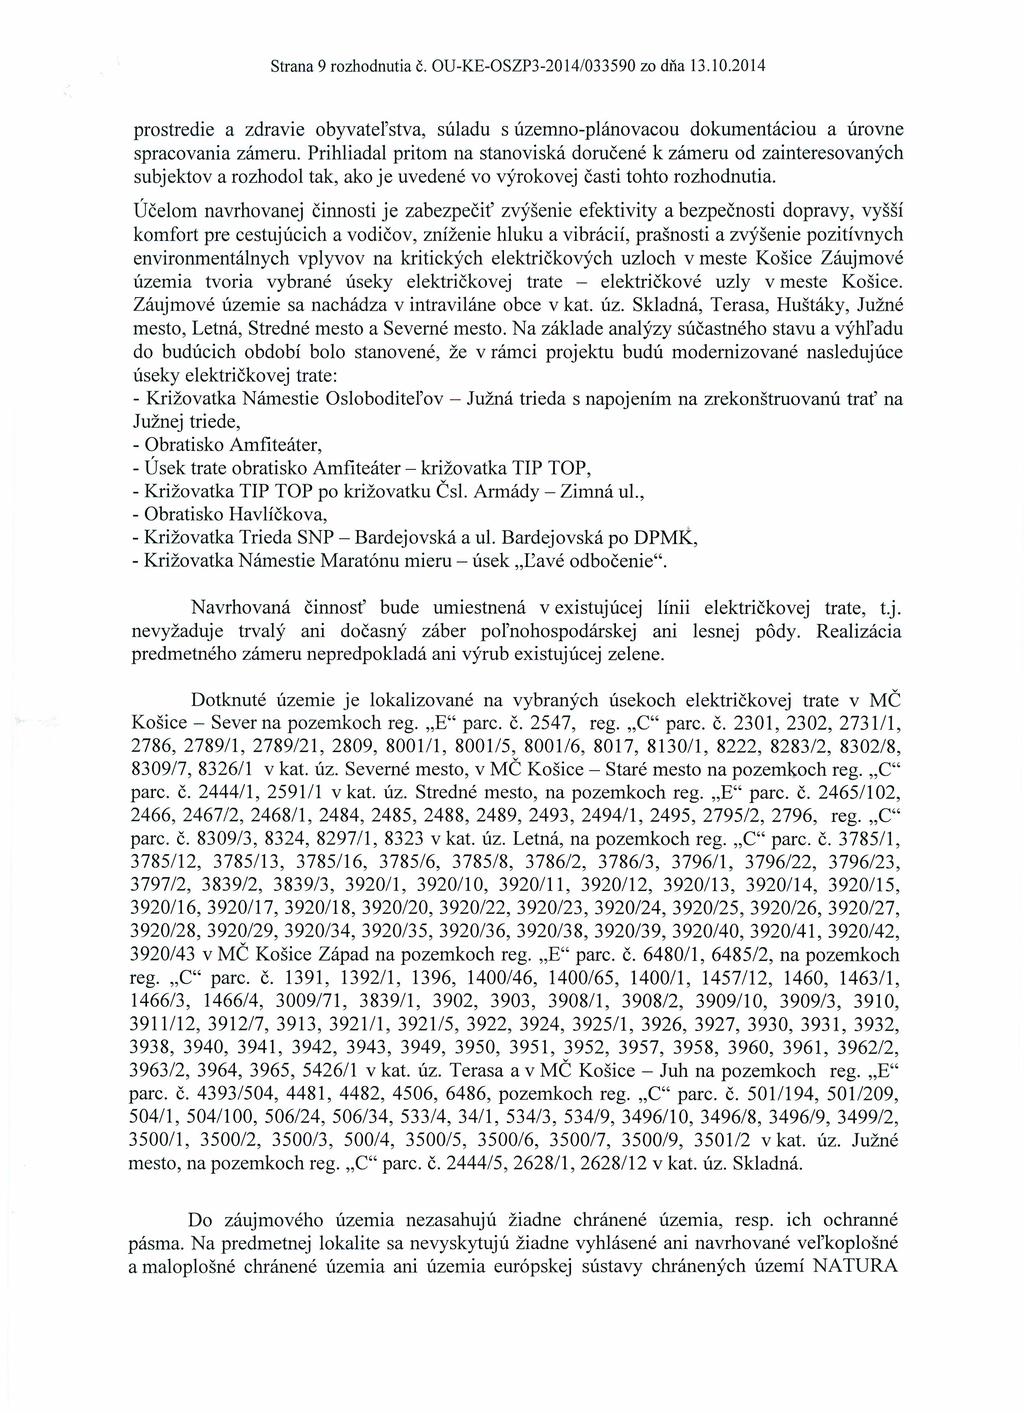 Strana 9 rozhodnutia Č. OU-KE-OSZP3-2014/033590 zo dňa l3.10.2014 prostredie a zdravie obyvatel'stva, súladu s územno-plánovacou dokumentáciou a úrovne spracovania zárneru.